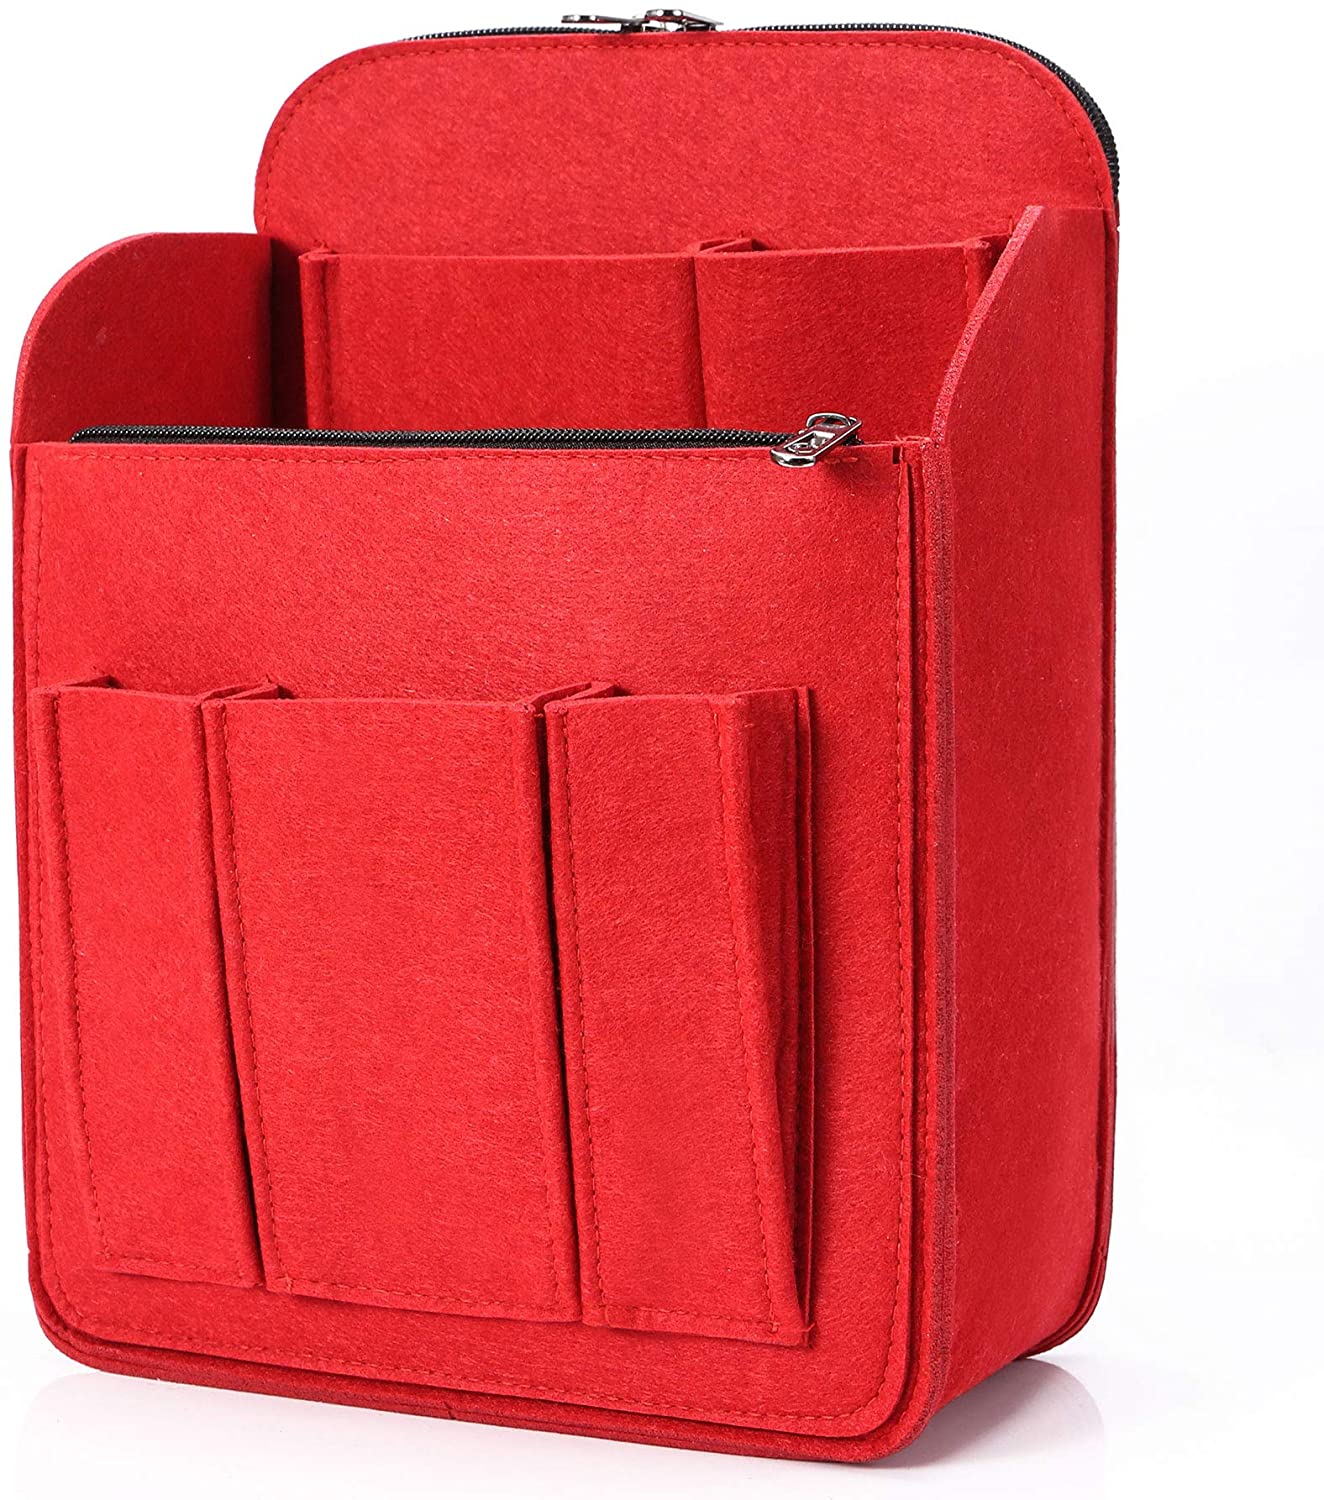 Felt Backpack Organizer Insert for Women and Men Large Travel Rucksack Insert Bag Organizer 